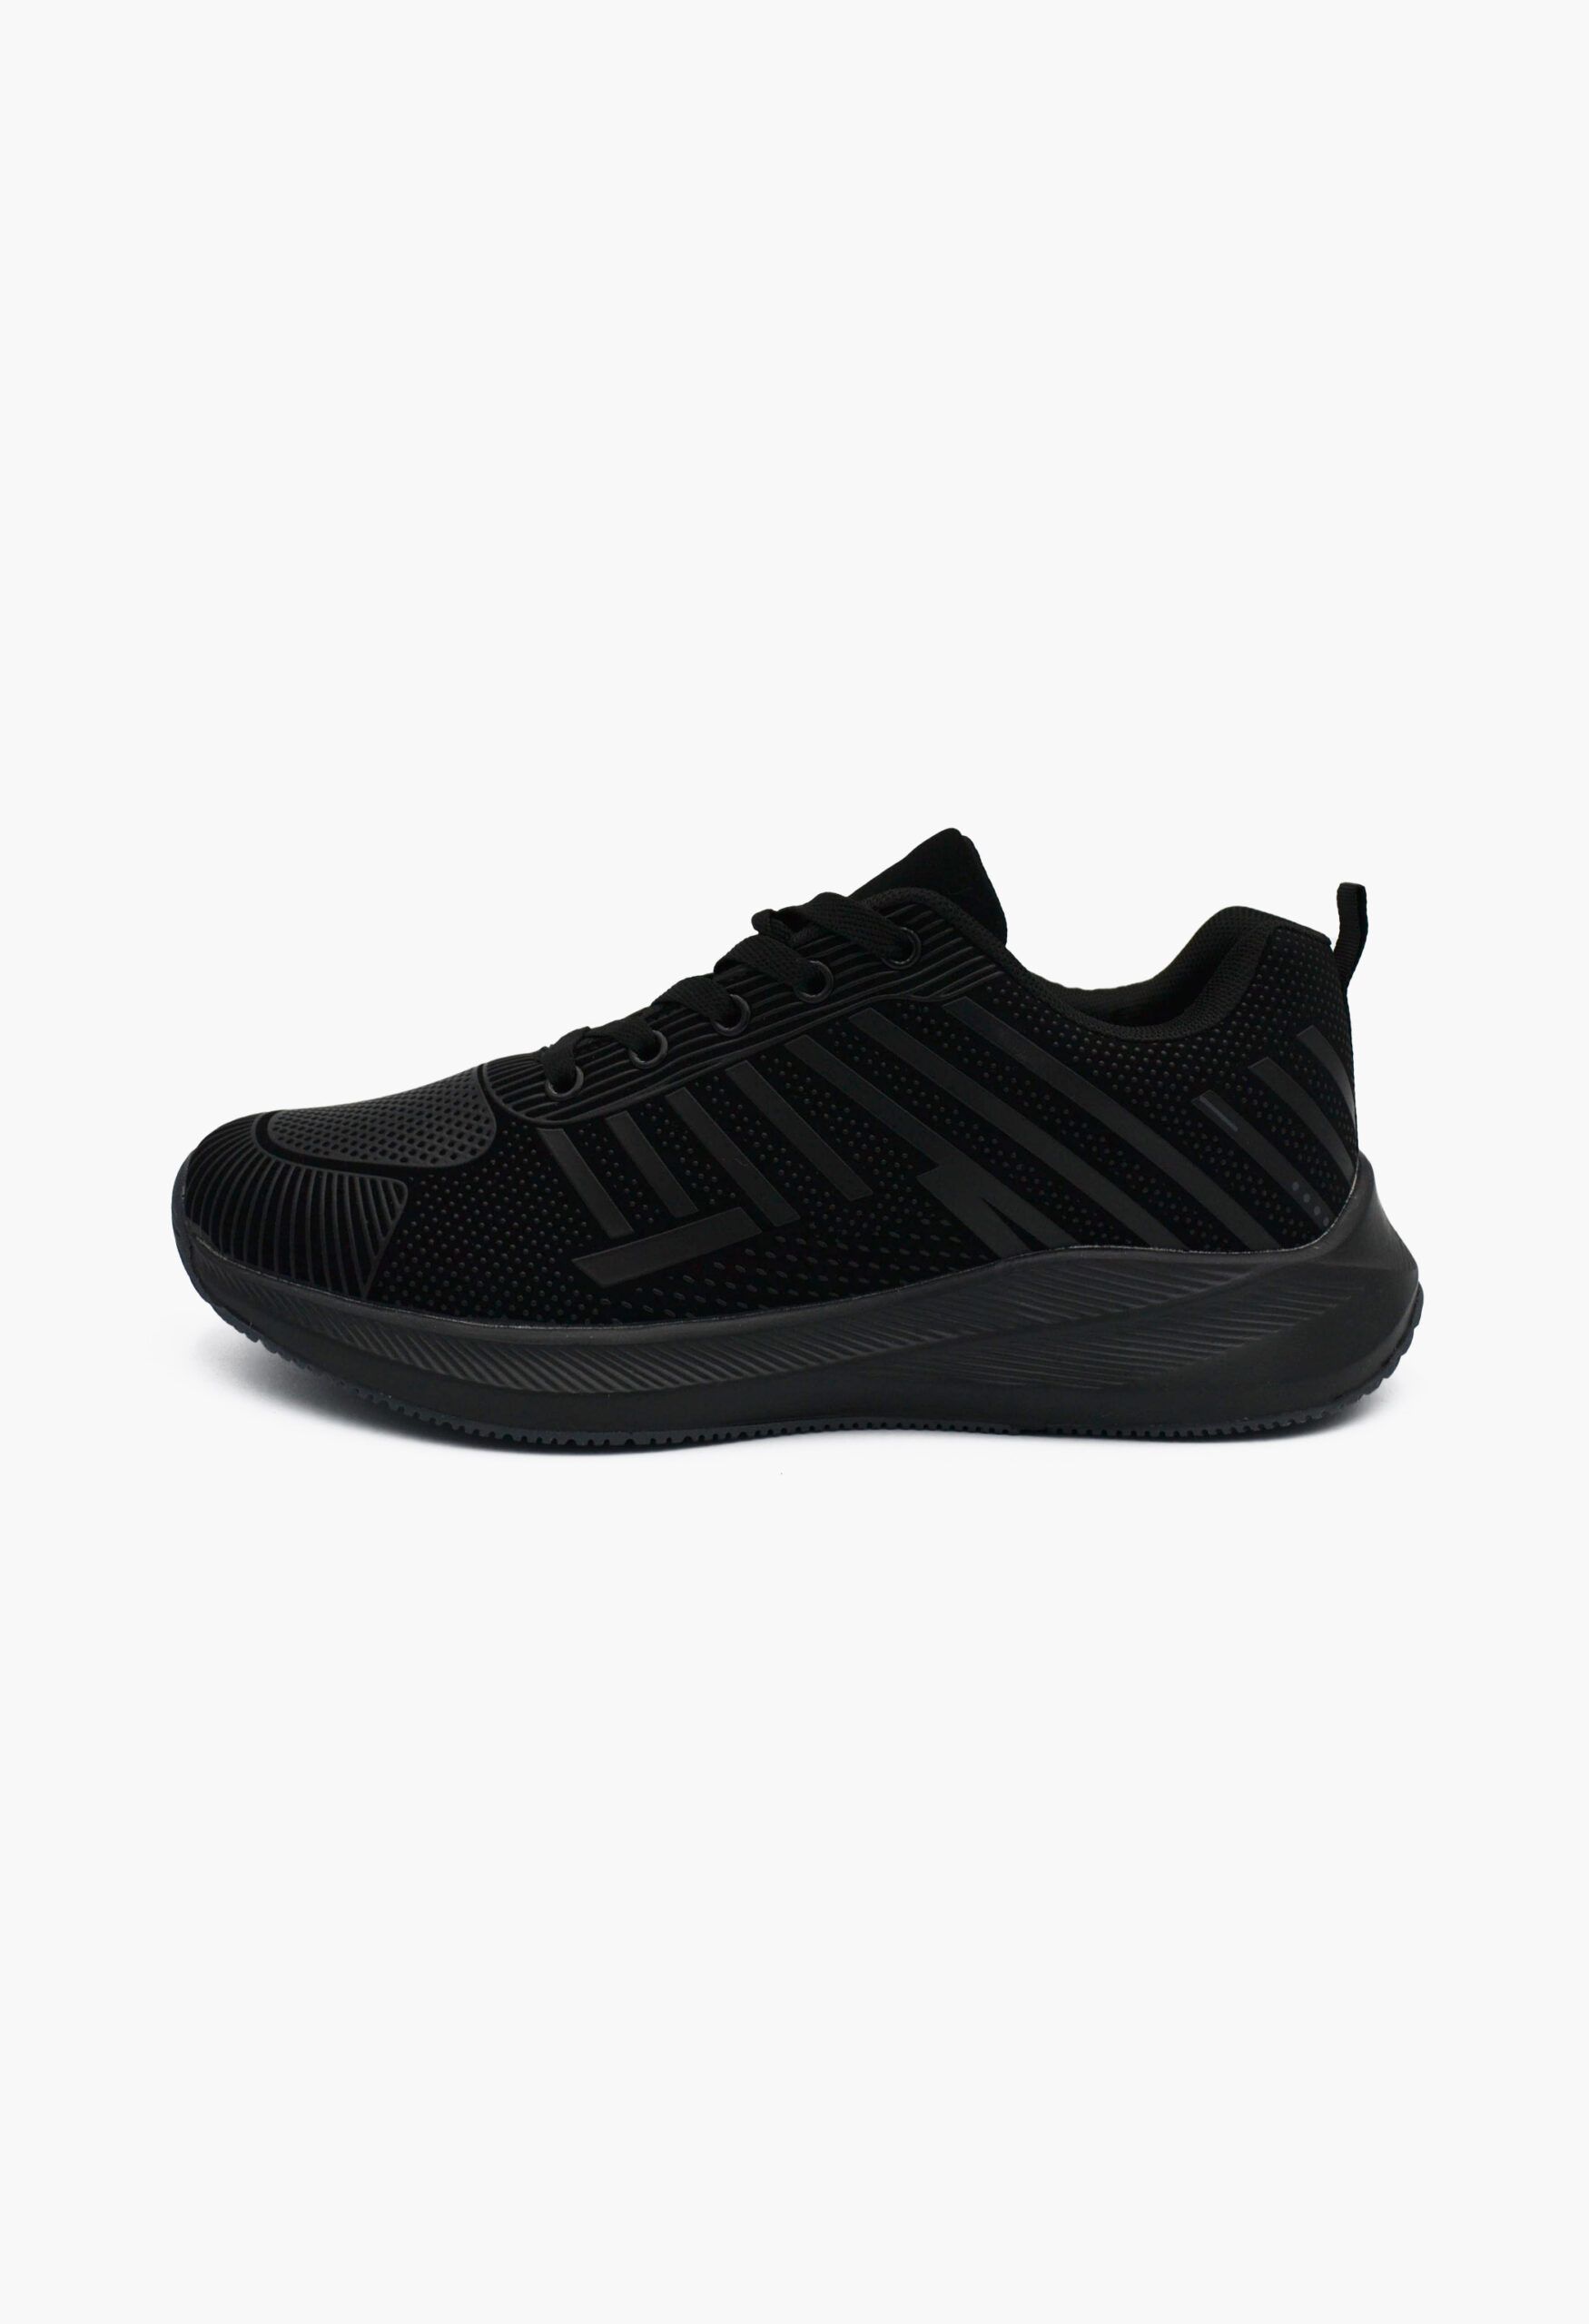 Ανδρικά Αθλητικά Παπούτσια για Τρέξιμο Μαύρο / A-47-black/grey ΑΘΛΗΤΙΚΑ & SNEAKERS joya.gr